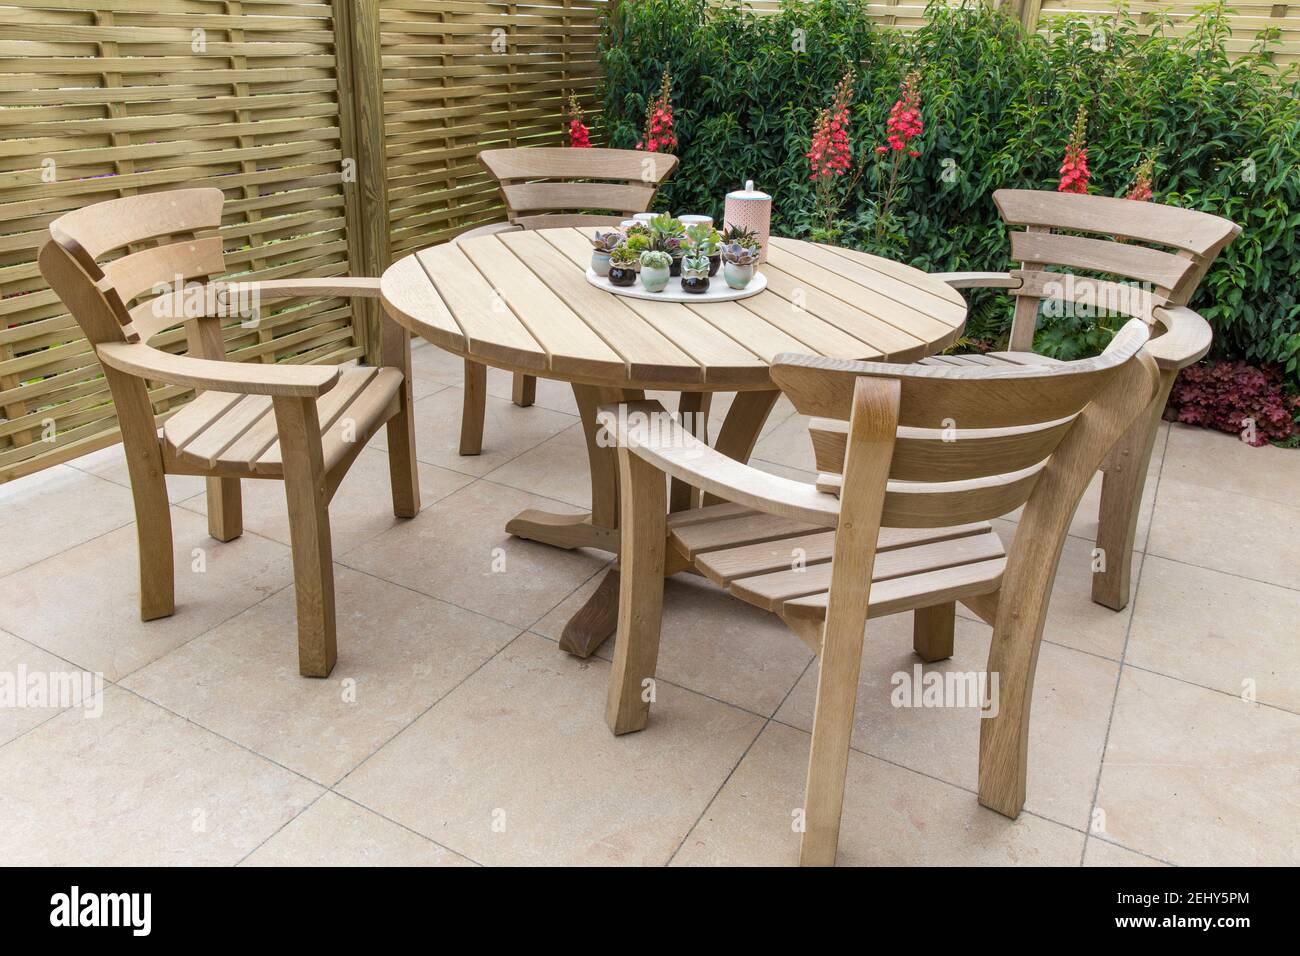 Zona de muebles de comedor exterior Moderno patio pavimentado de piedra -  muebles de jardín de madera dura mesa y sillas muestran plantas suculentas  en ollas de cerámica Reino Unido Fotografía de